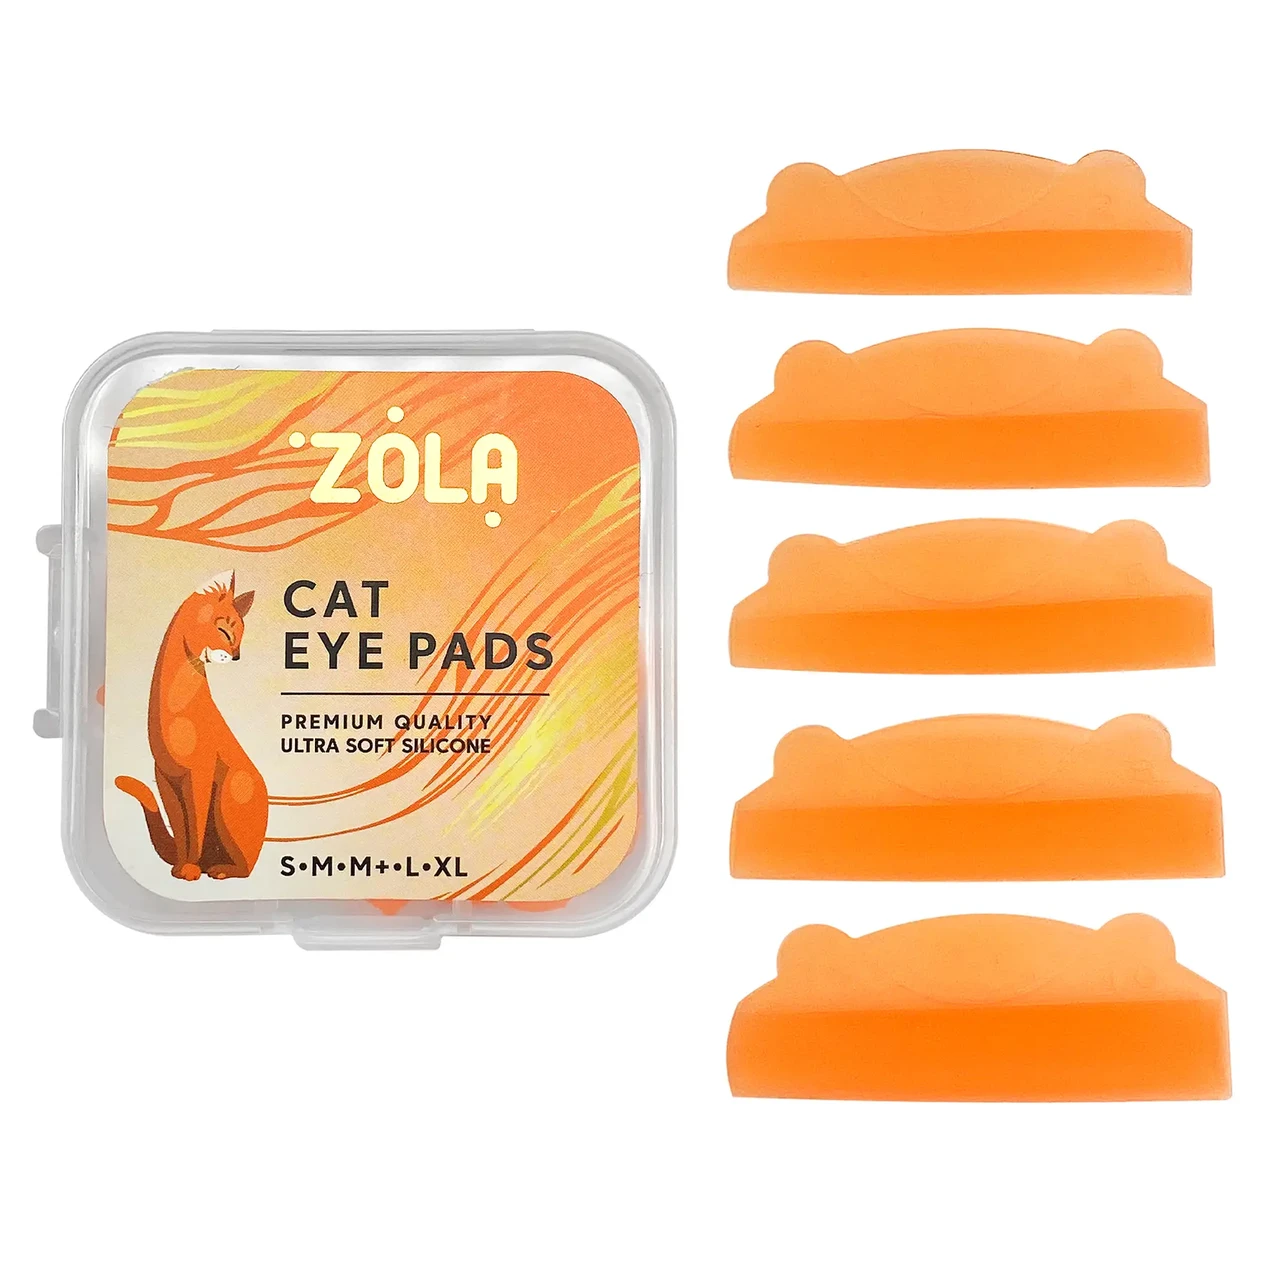 Валики для ламинирования ZOLA Cat Eye Pads (S, M, M+, L, XL)